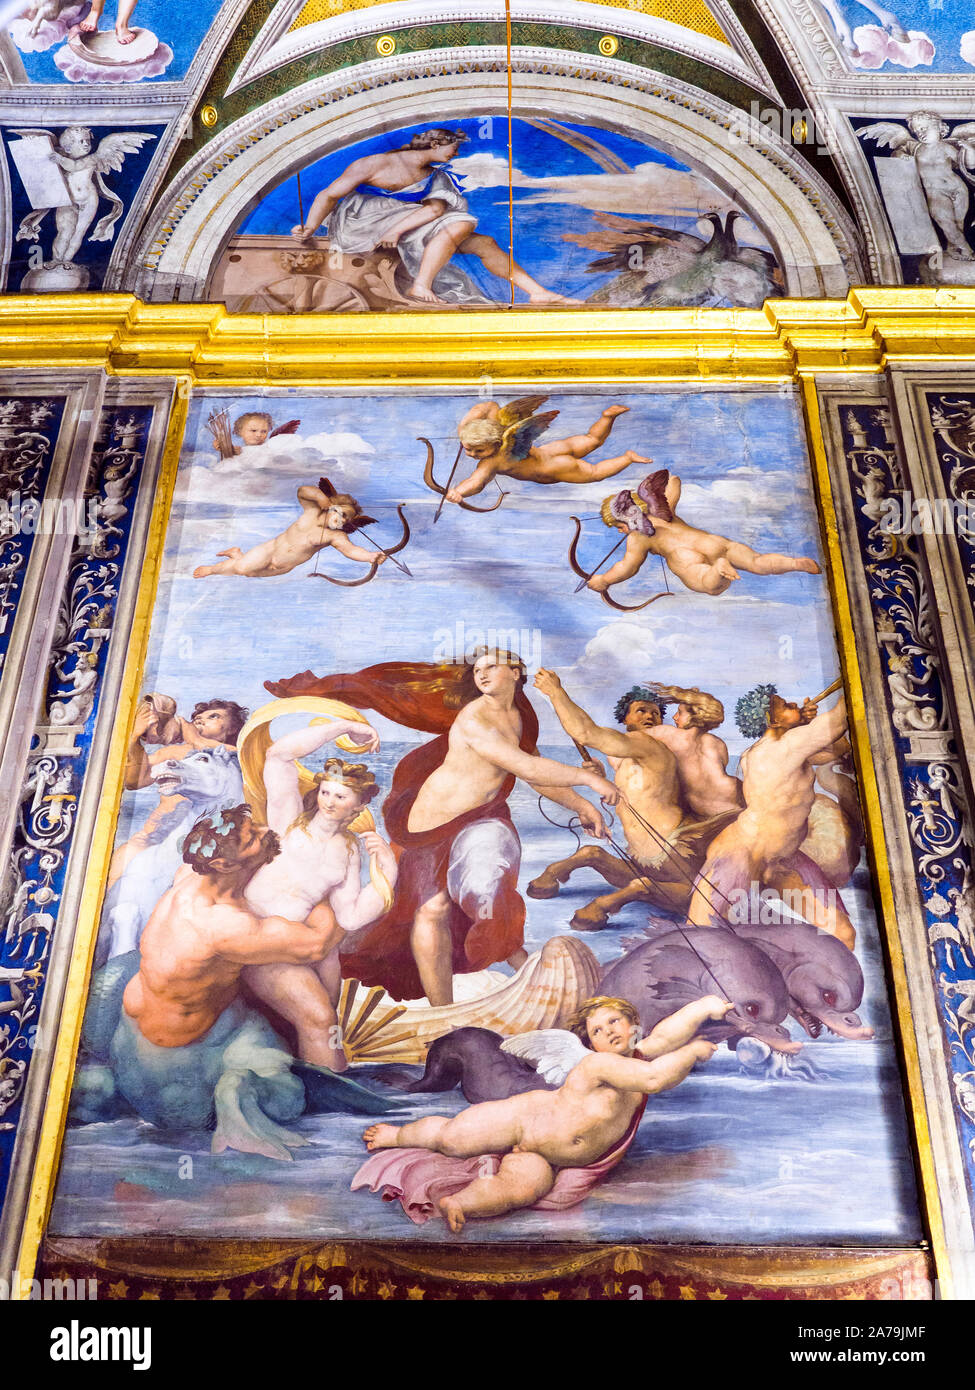 Il Trionfo di Galatea (Il Trionfo di Galatea) (1511-1512) di Raffaello (1483 - 1520) nella Loggia di Galatea di Villa Farnesina - Roma, Italia Foto Stock